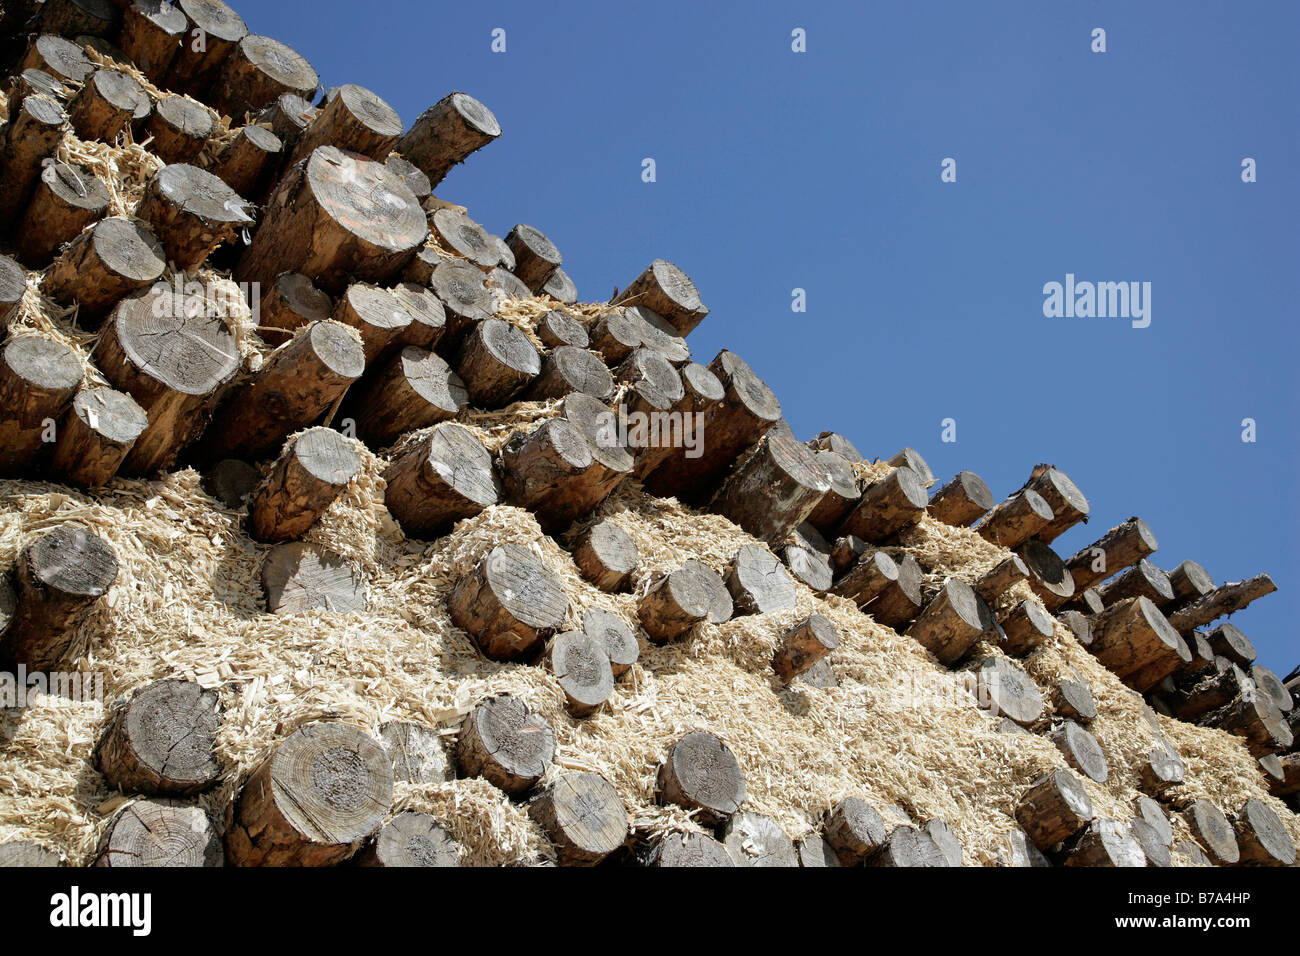 Holz gelagert bereit für die Herstellung von Spanplatten oder Spanplatten, Produktionsstandort der Pfleiderer AG in Neumarkt, Bavari Stockfoto